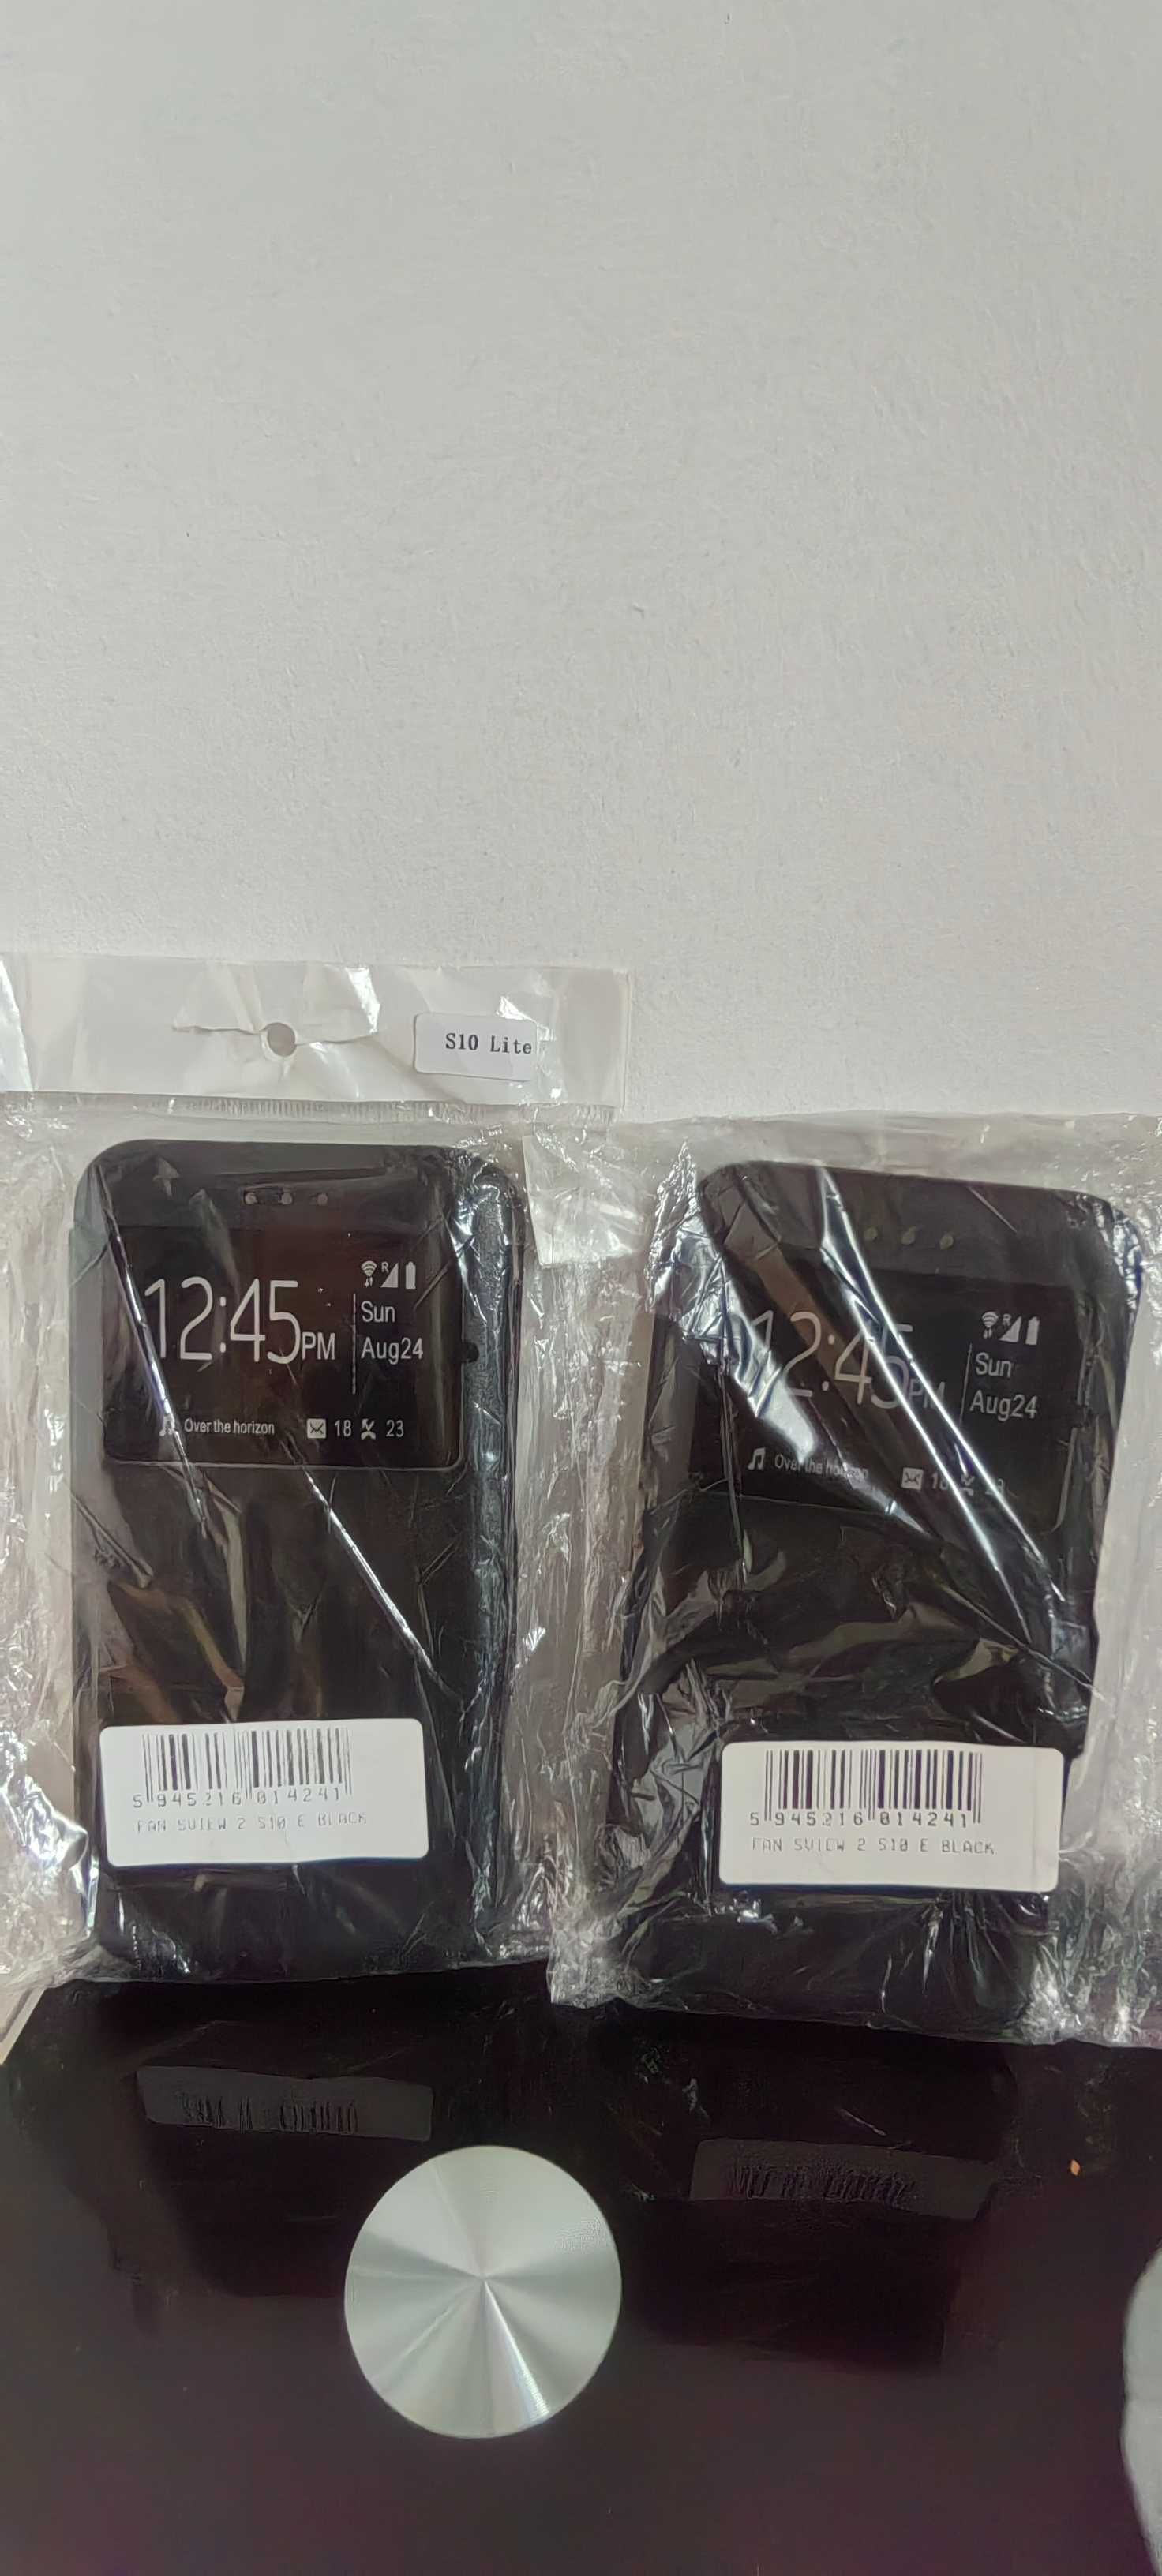 Vând huse de Samsung, iPhone și folie sticla ipad